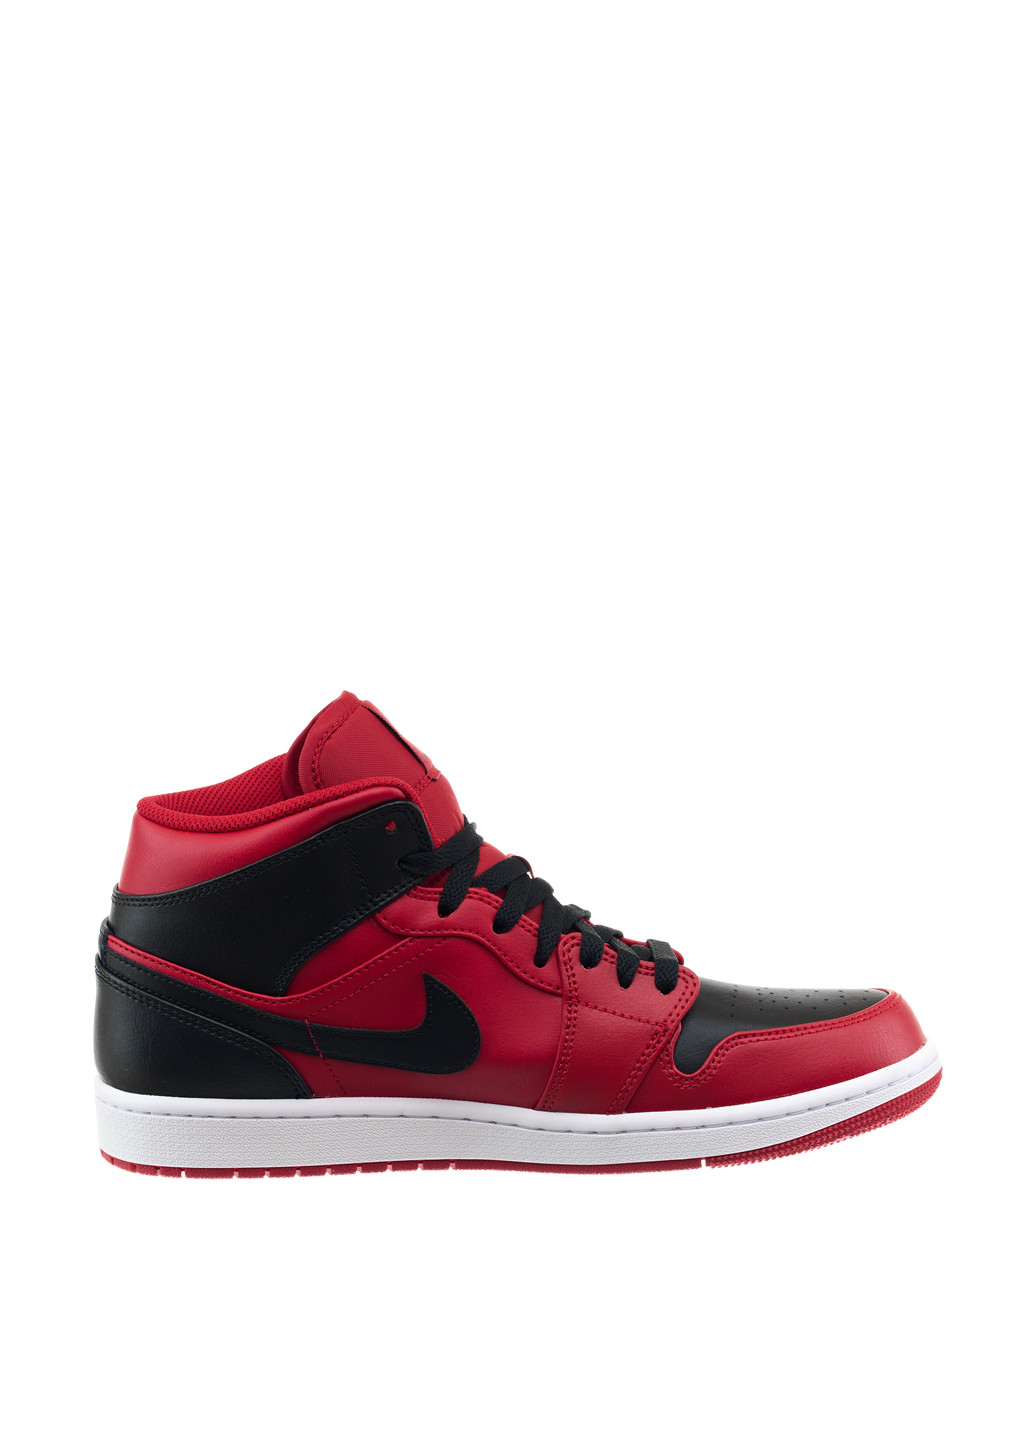 Червоні Осінні кросівки 554724-660_2024 Jordan 1 MID